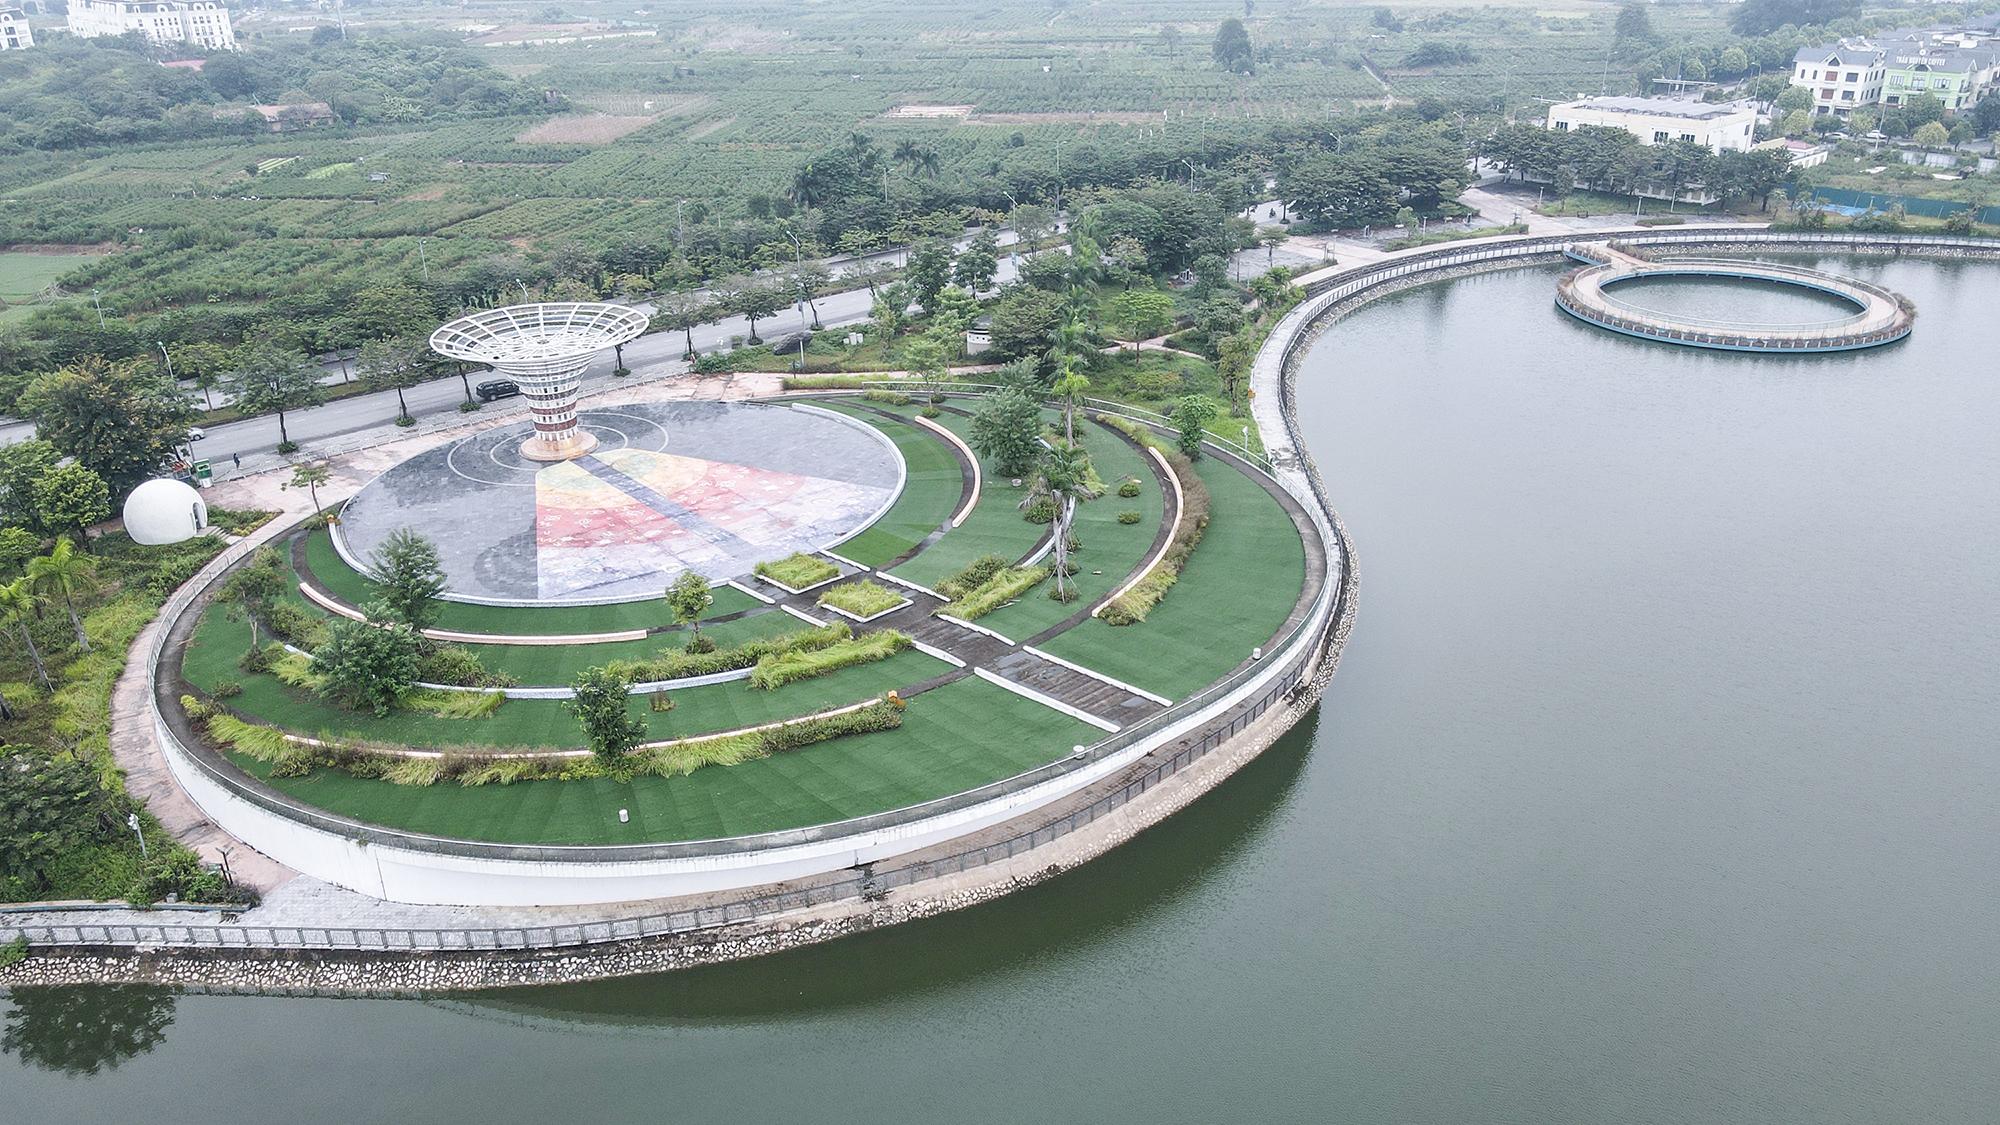 Hà Nội: Cận cảnh công viên thiên văn học bị bỏ hoang 2 năm qua dù đã hoàn thiện 